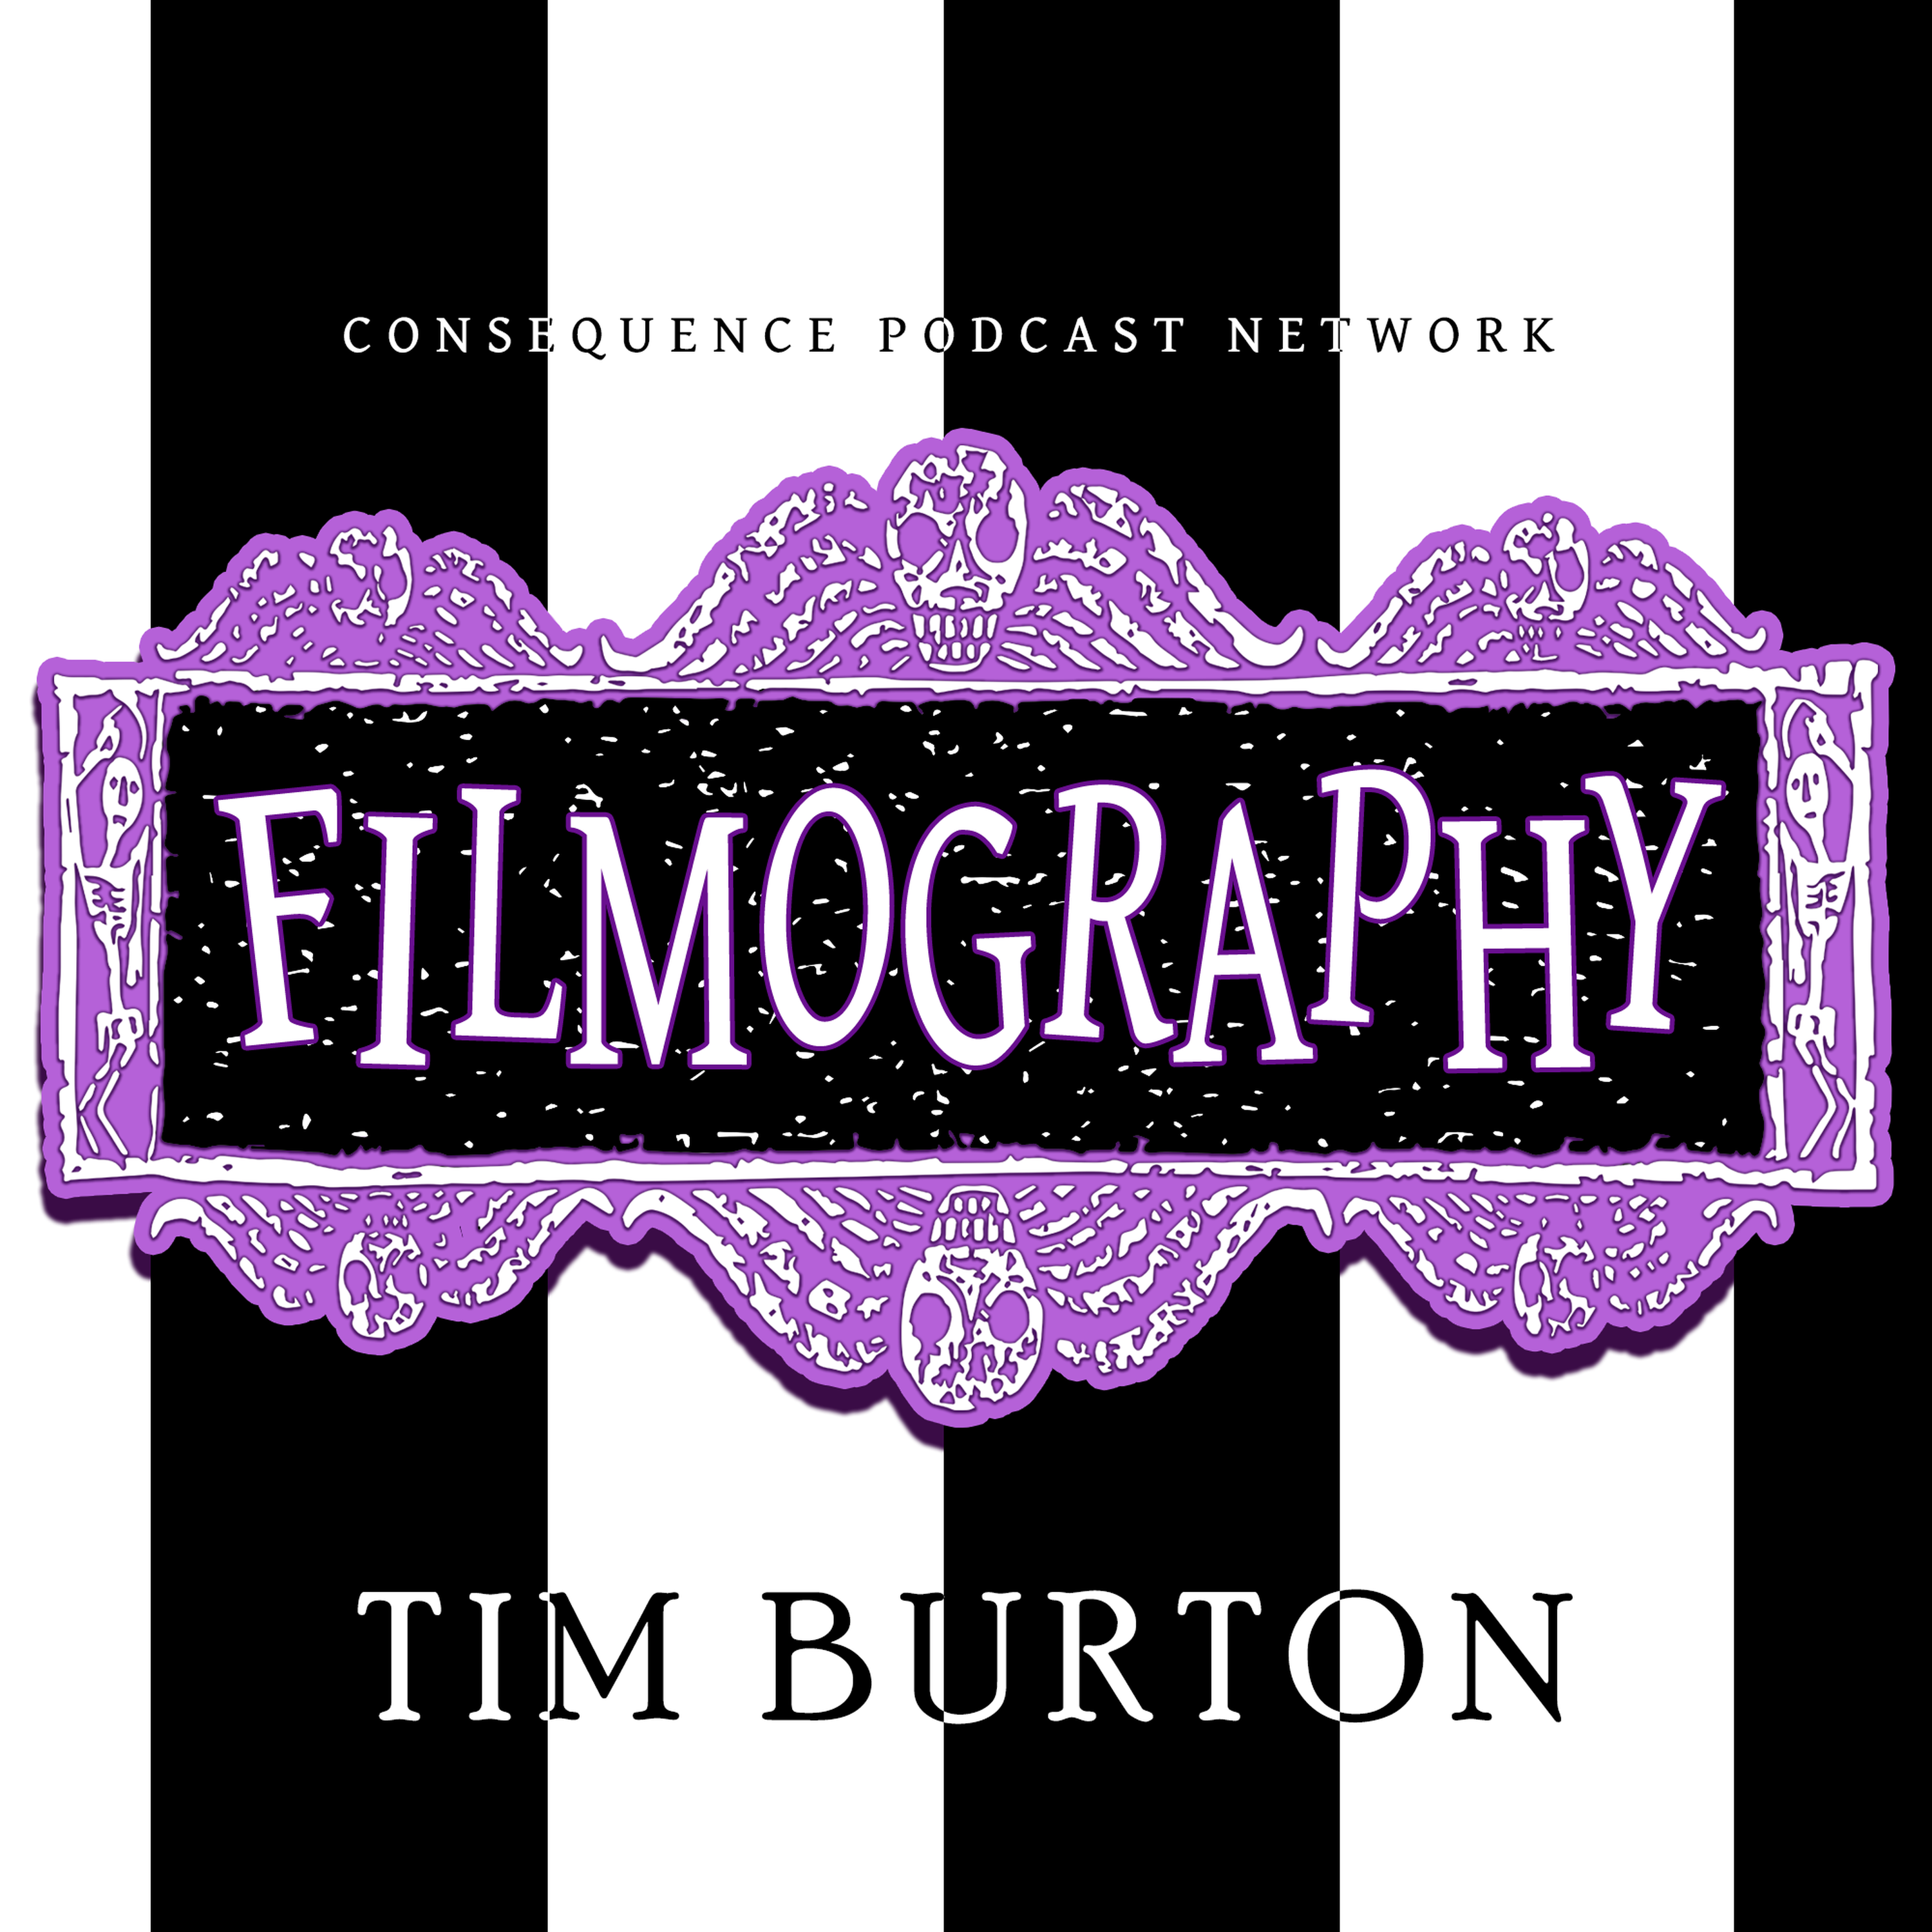 Tim Burton: Stop Motion - Beetlejuice, Corpse Bride, Frankenweenie, Nightmare Before Christmas